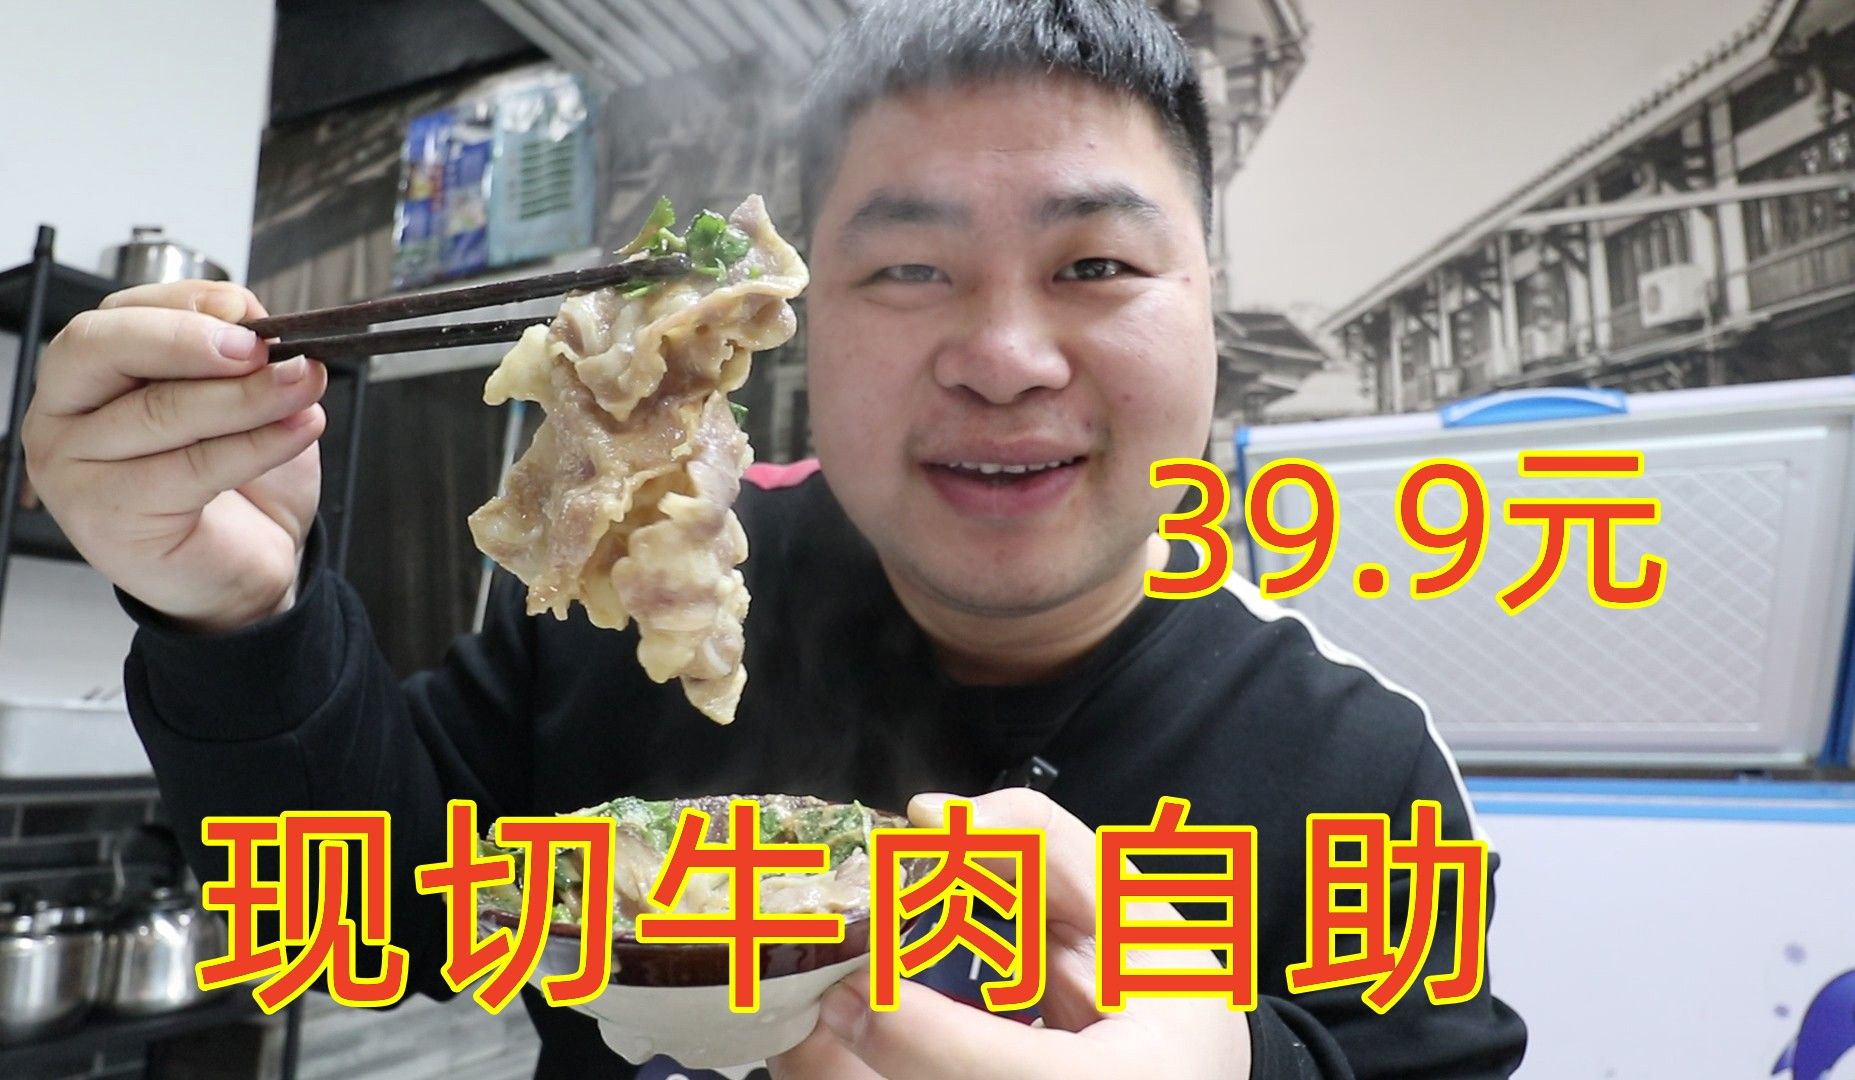 39元就能吃到现切牛肉自助火锅，生意好到要排队，味道好吃吗？